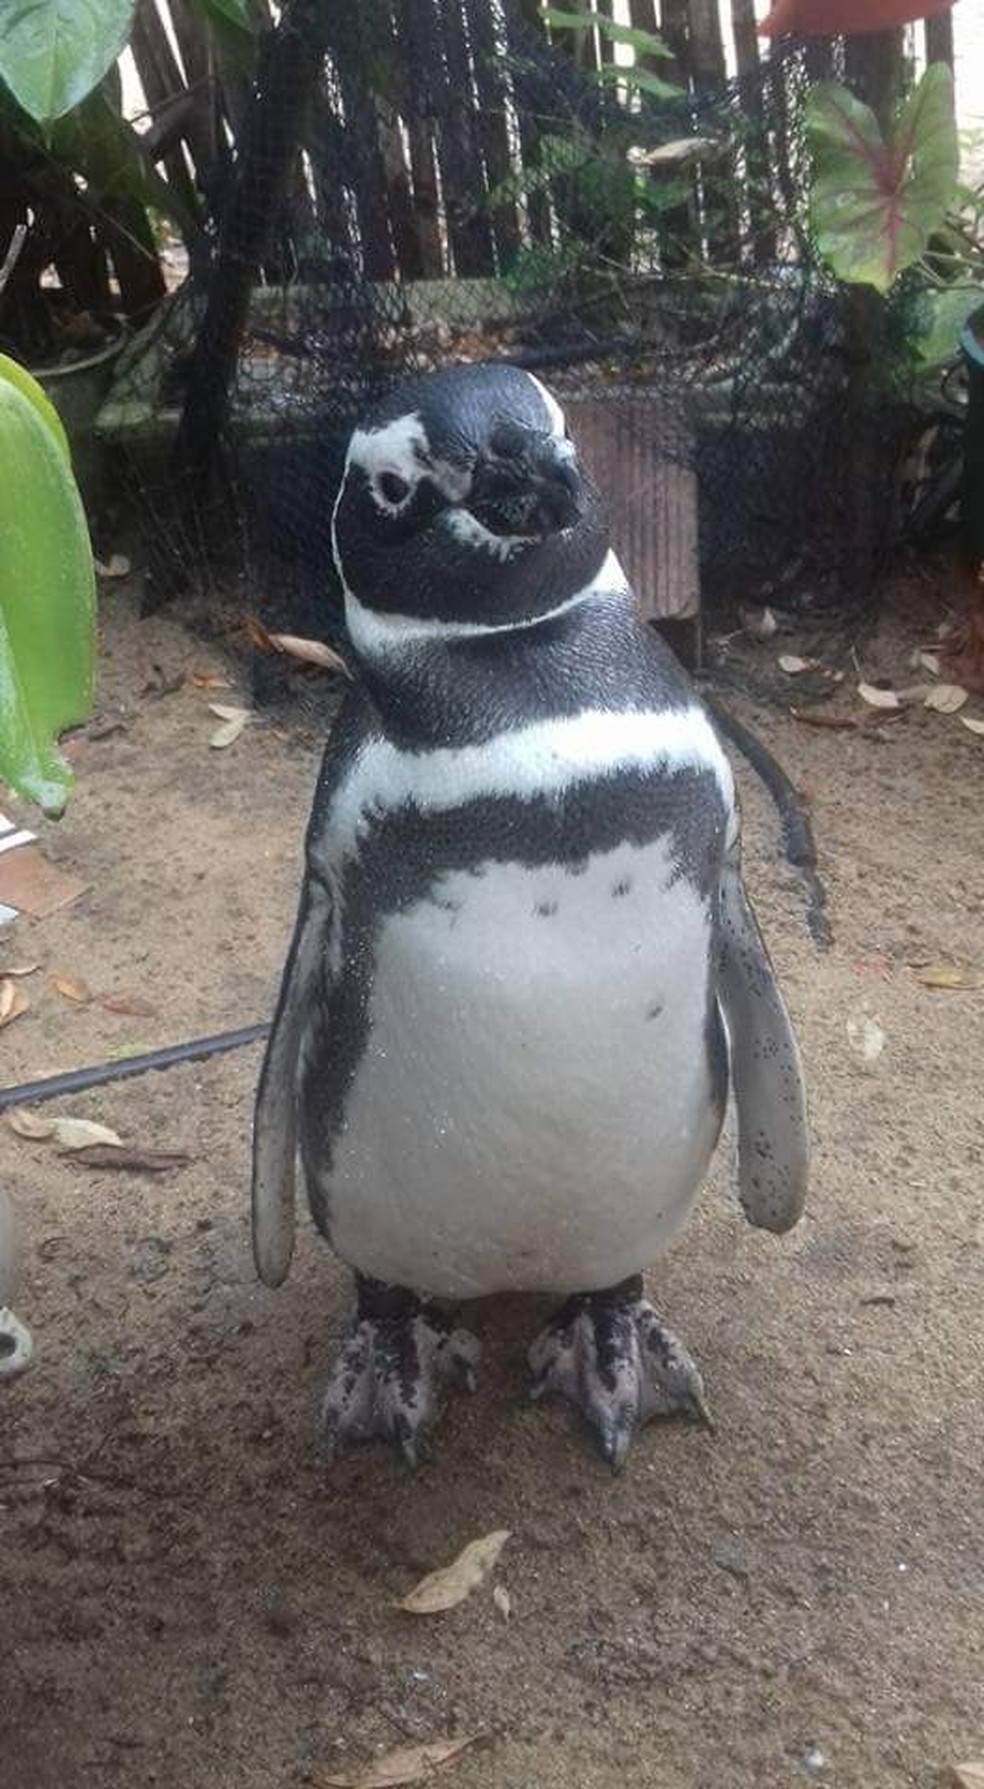 App do Dia - Ilha dos Pinguins